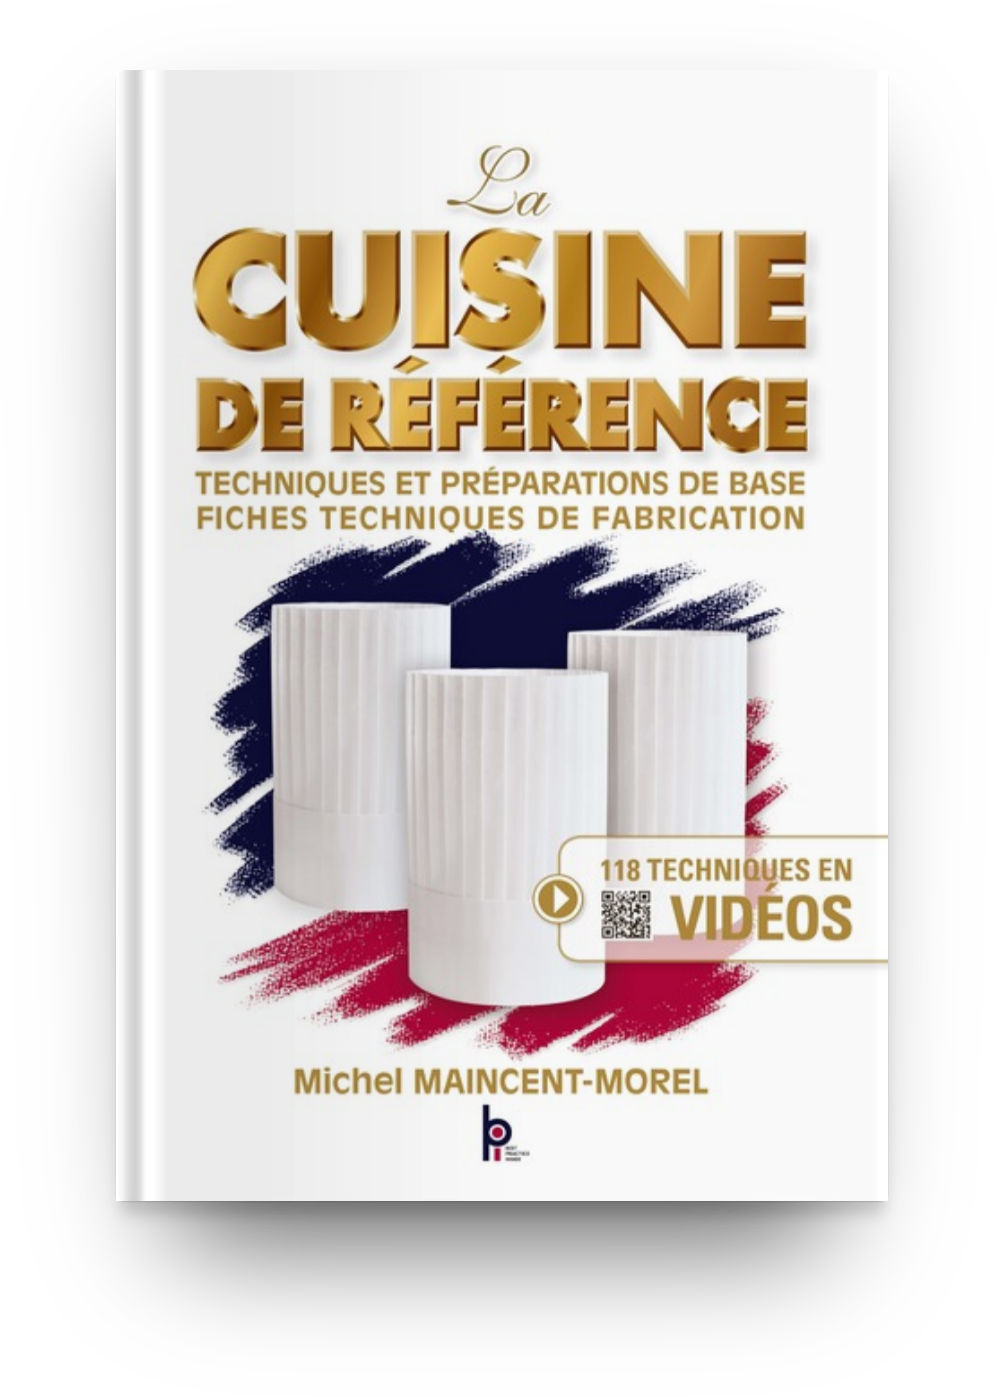 alimentation et cuisine > cuisine > ustensiles de cuisine > pour la  pâtisserie image - Dictionnaire Visuel